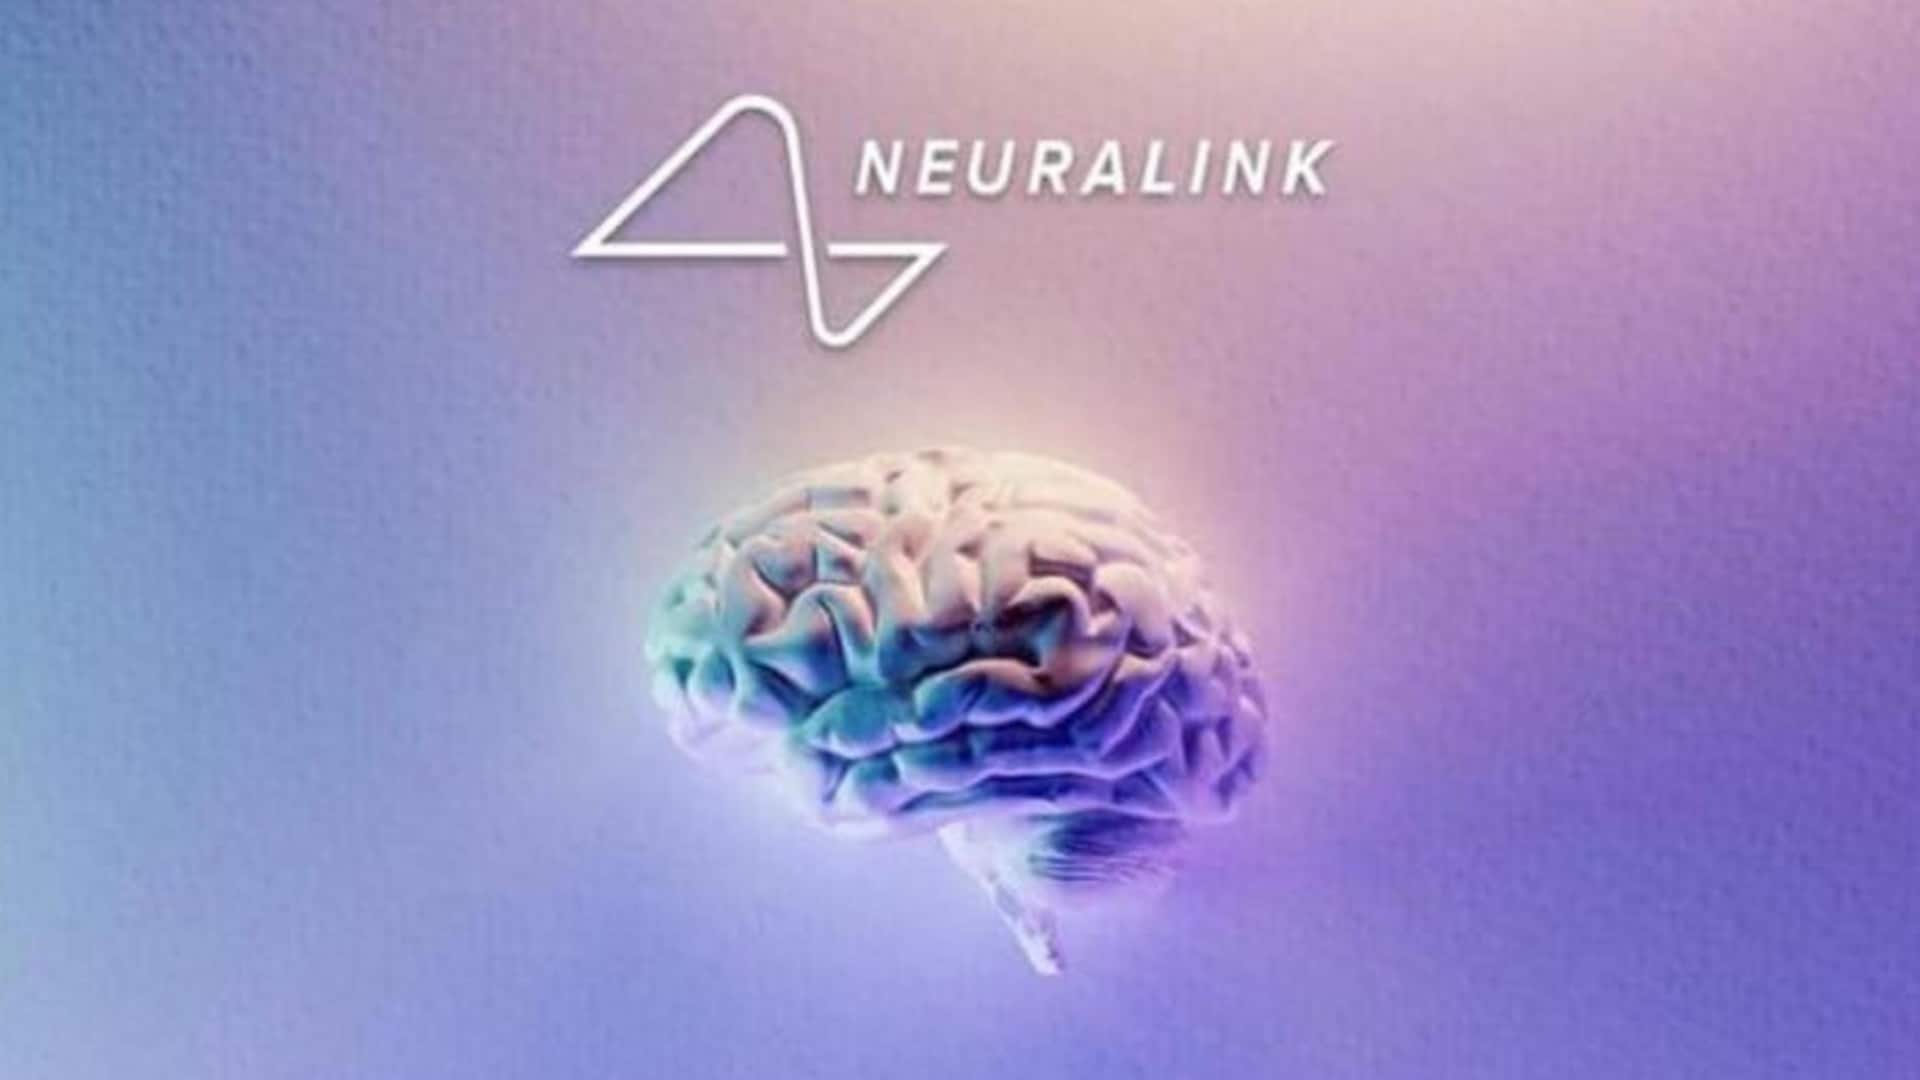 एलन मस्क की न्यूरालिंक को FDA से मिली इंसान के दिमाग के साथ परीक्षण की इजाजत